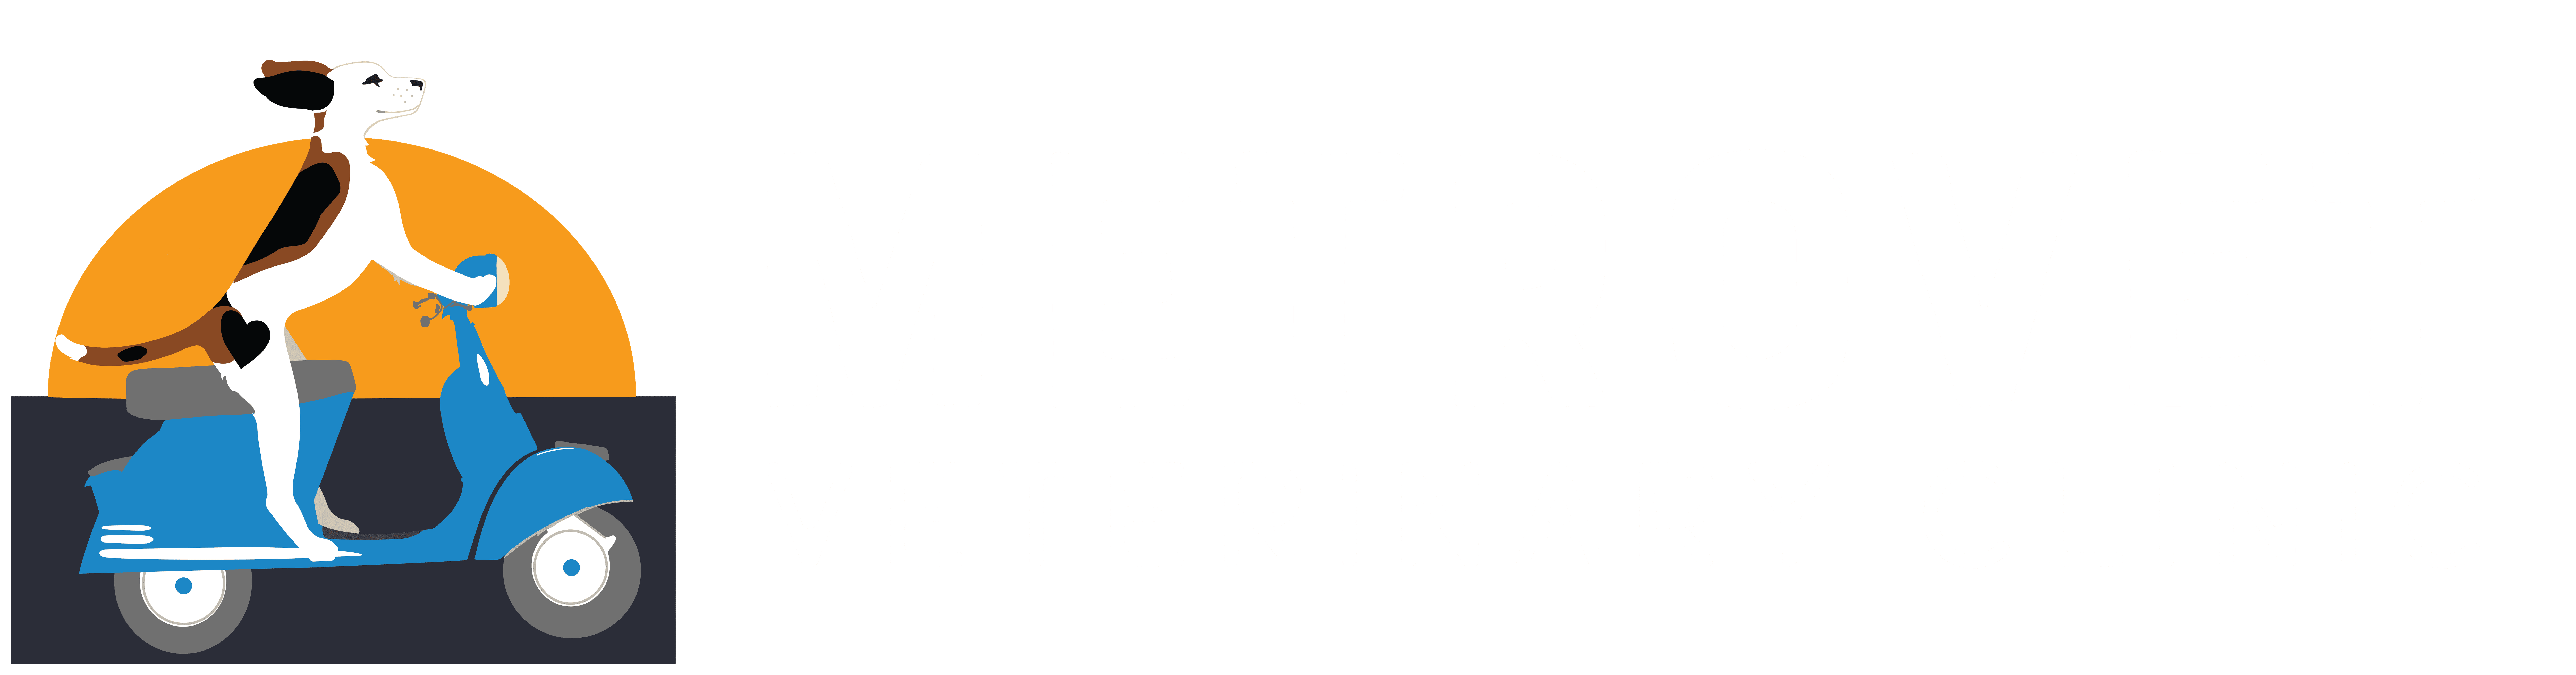 Metrovet Alternate Logo White